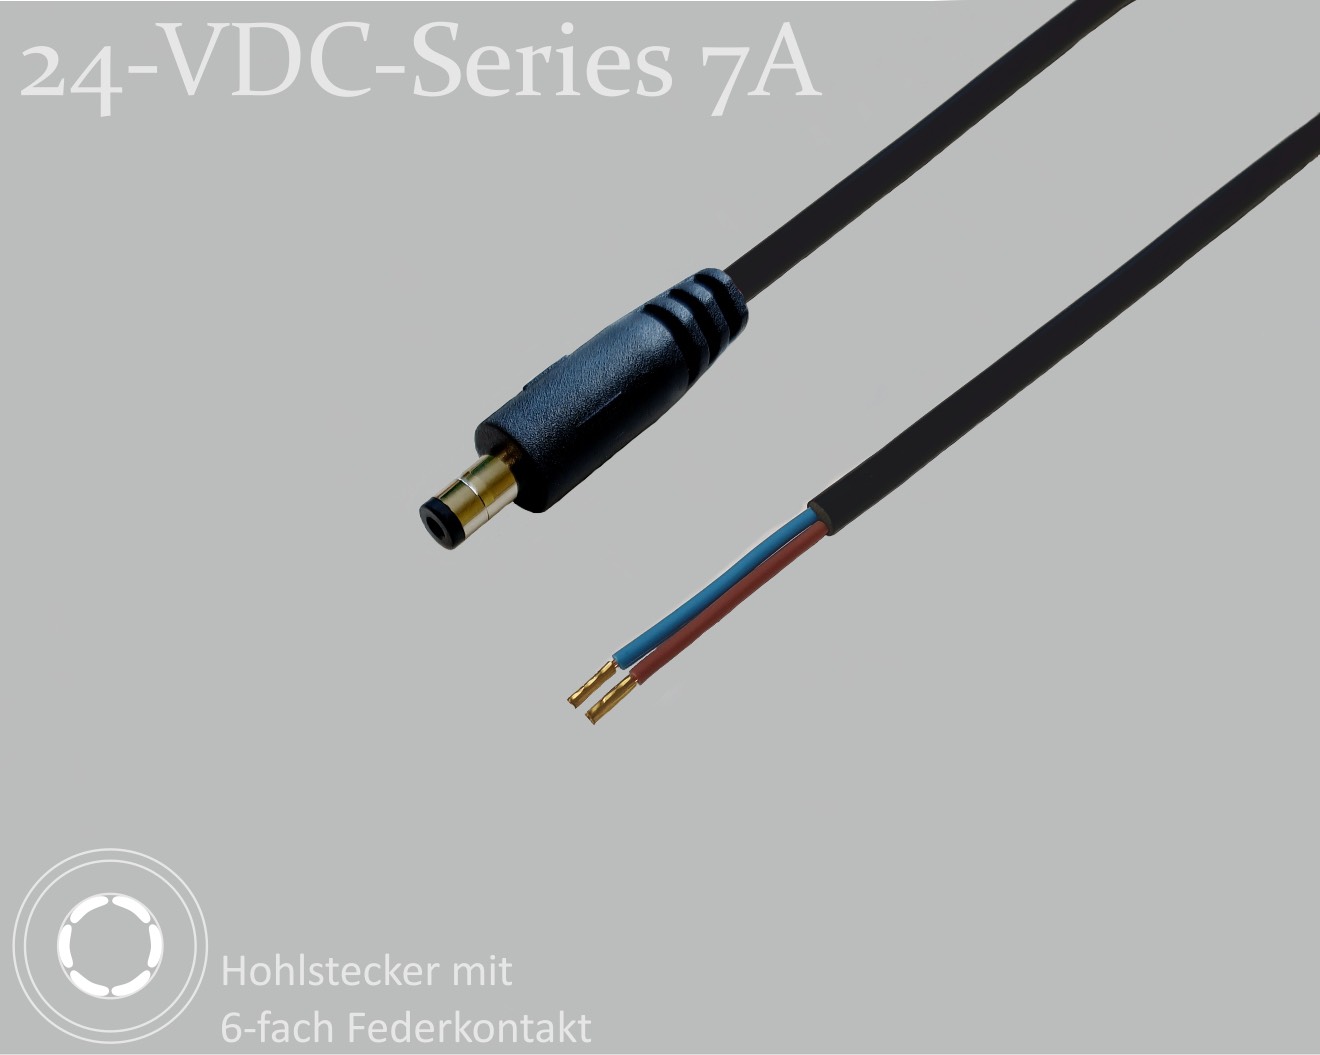 24-VDC-Series 7A, DC-Anschlusskabel, DC-Stecker mit 6-Federkontakt 2,5x5,5x9,5mm, Rundkabel 2x0,50mm², schwarz, Aderendhülsen, 1,5m